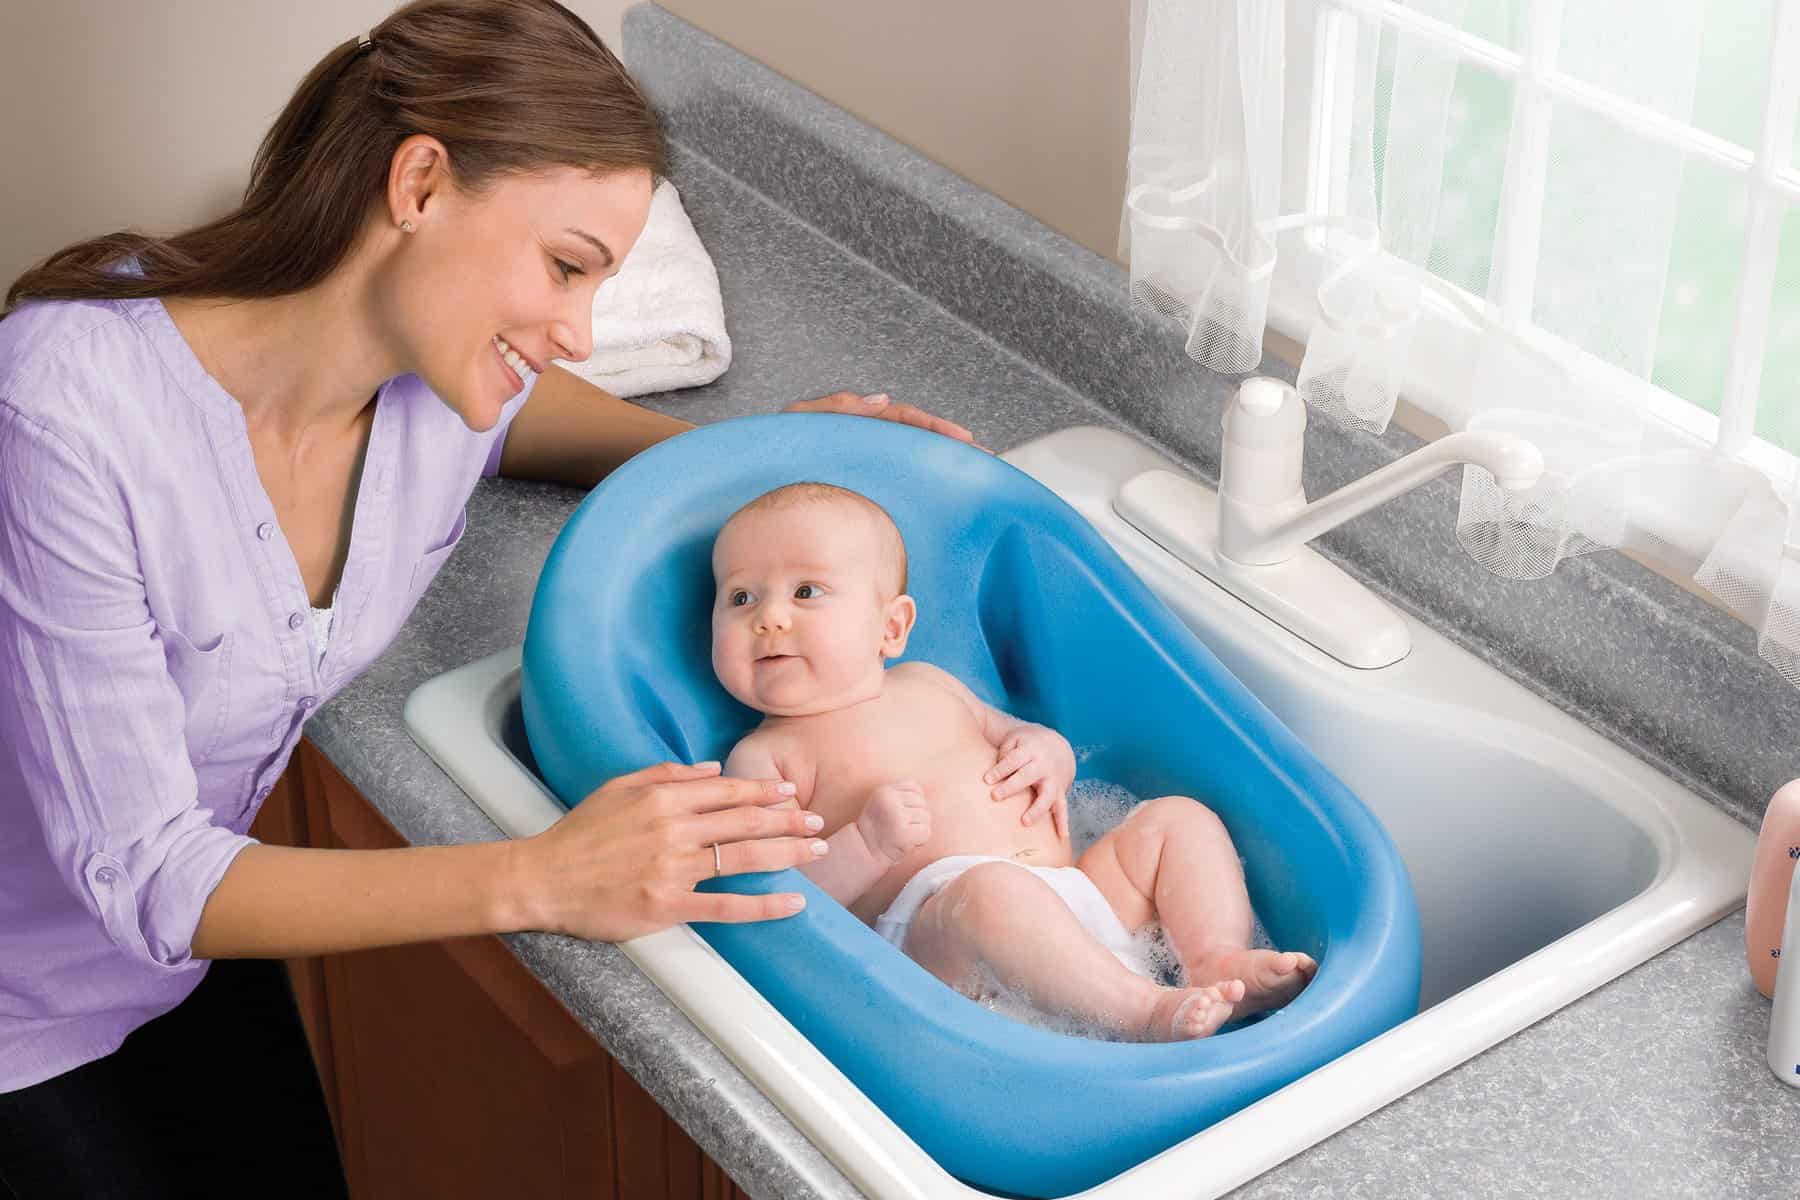 washing infant in kitchen sink